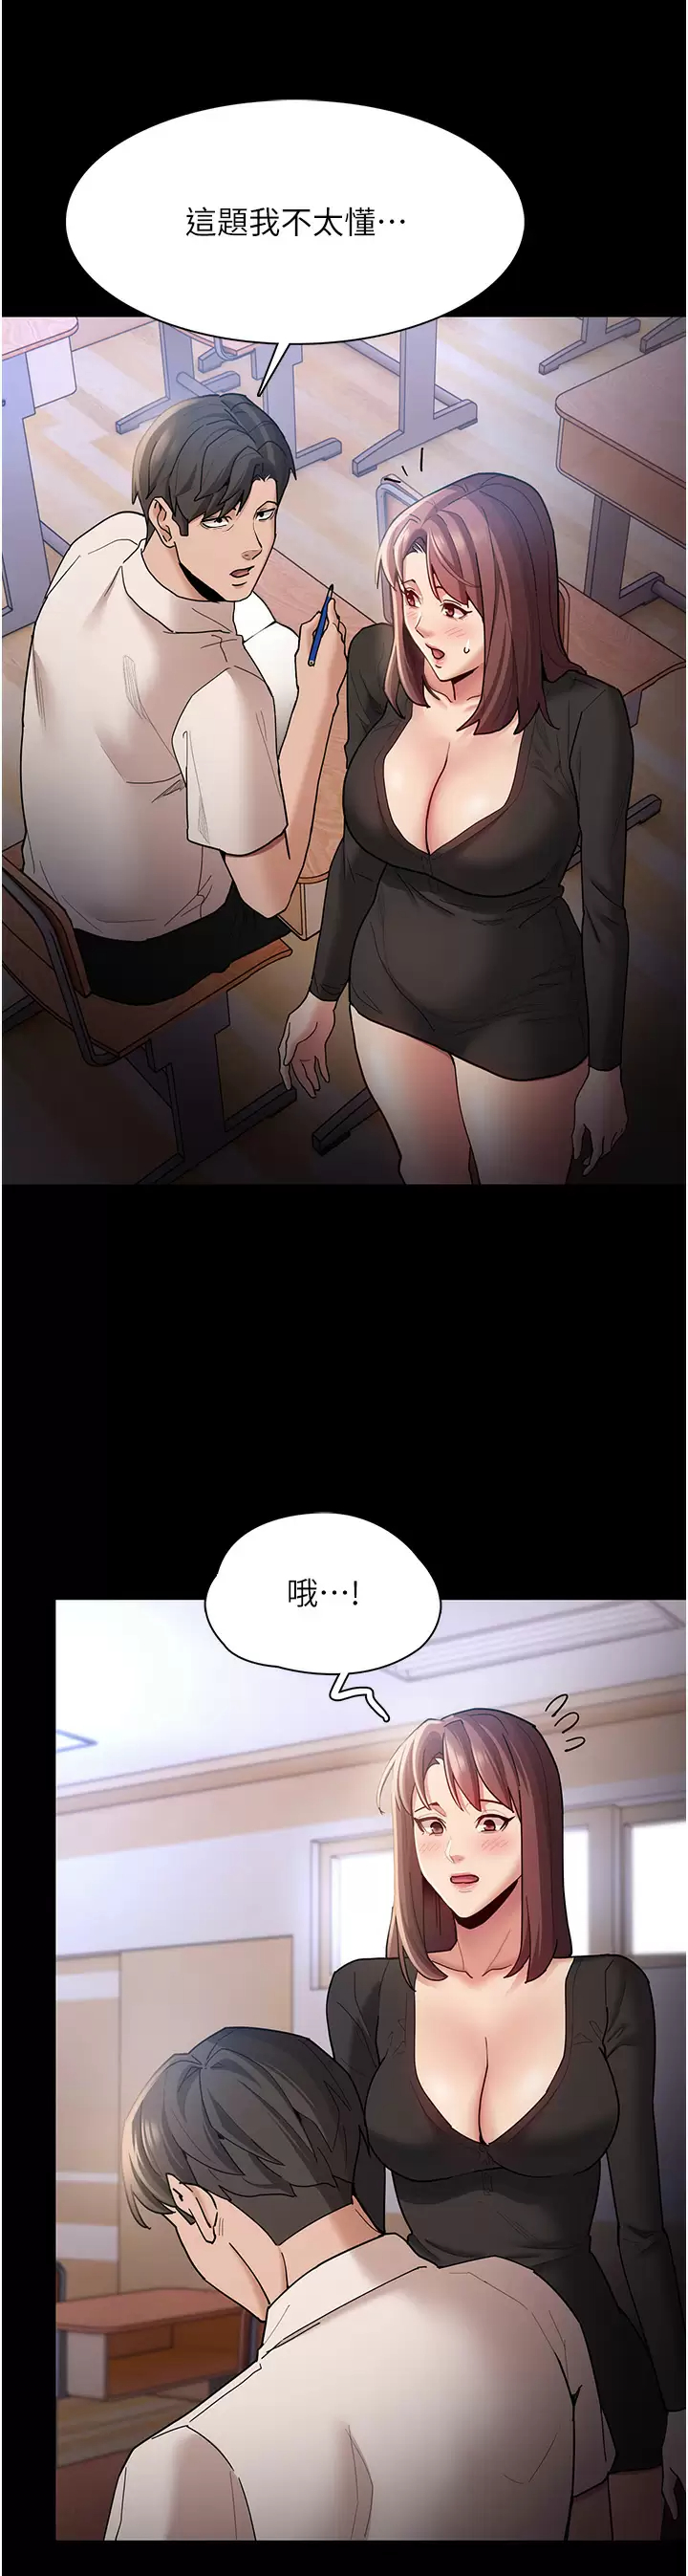 韩国污漫画 癡漢成癮 第13话 自投罗网的猎物 30